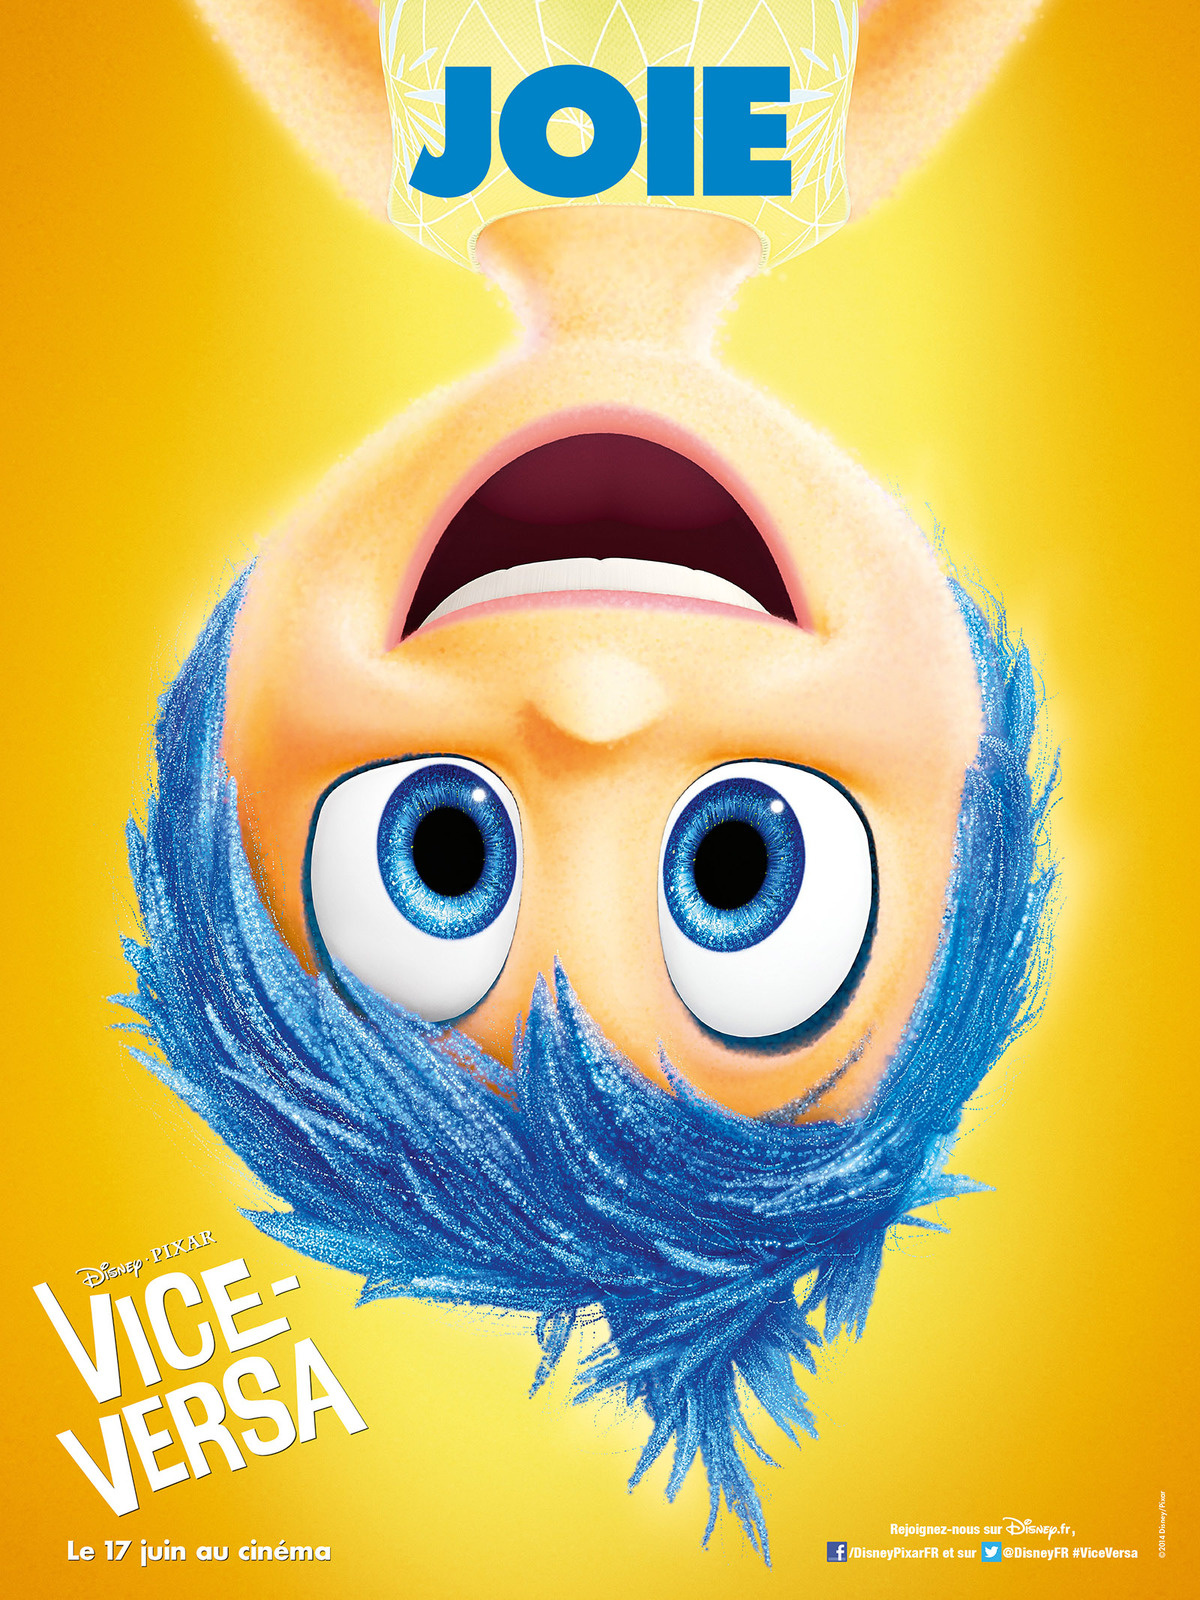 Vice-versa : le nouveau Pixar joue sur nos émotions